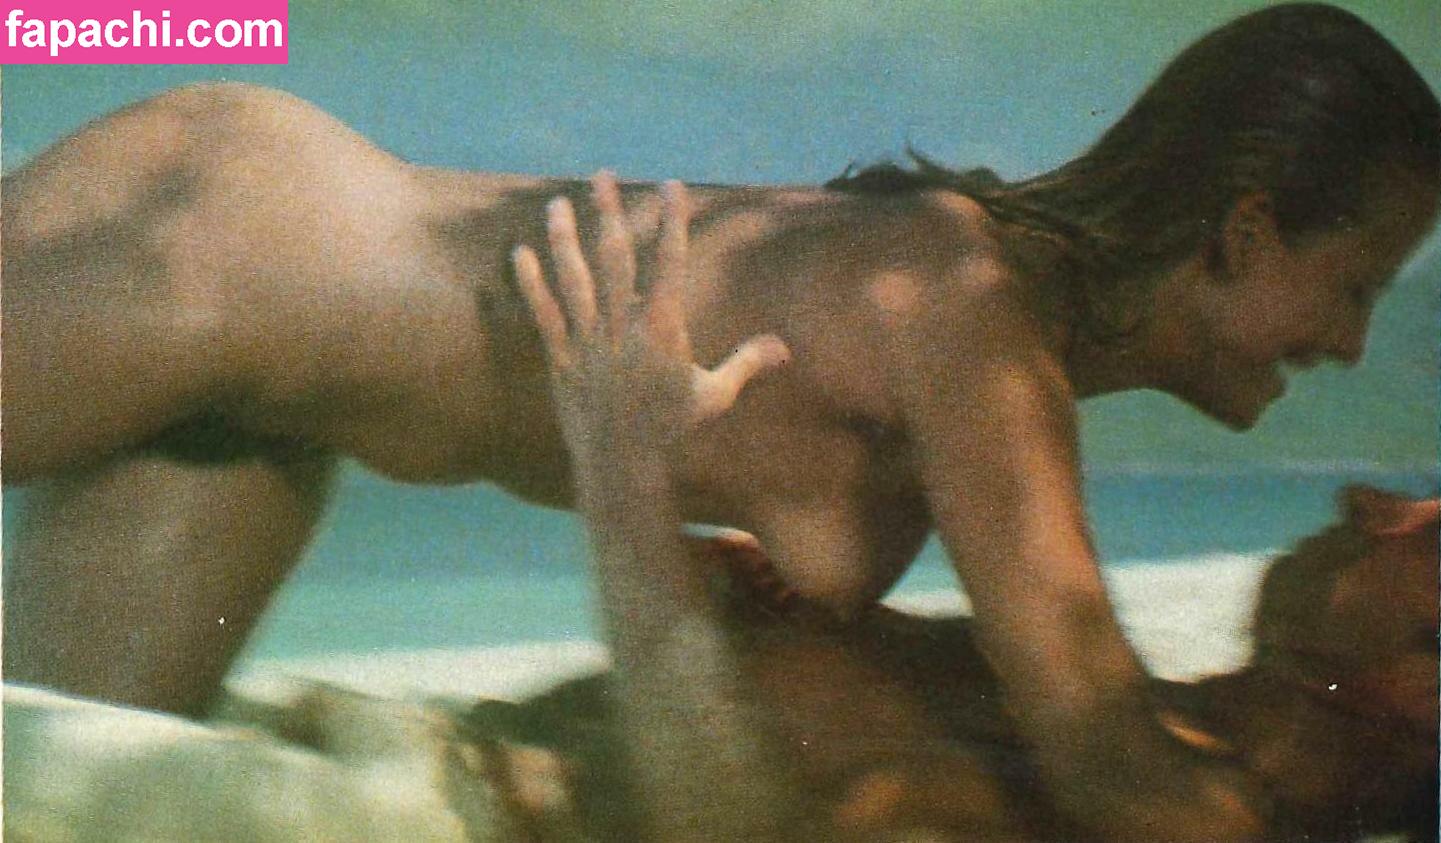 Sophie Marceau / sophiemarceau leaked nude photo #0175 from OnlyFans/Patreon